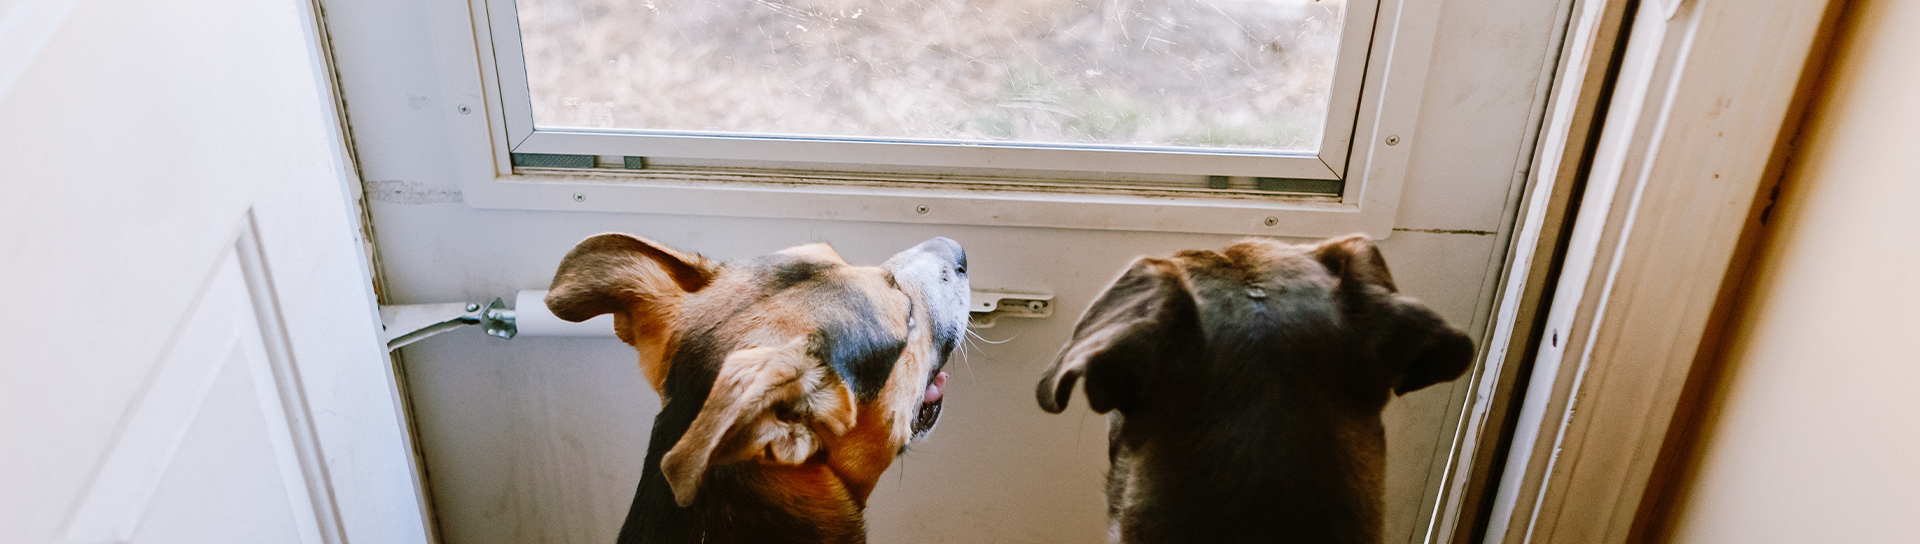 Dogs scratching at door